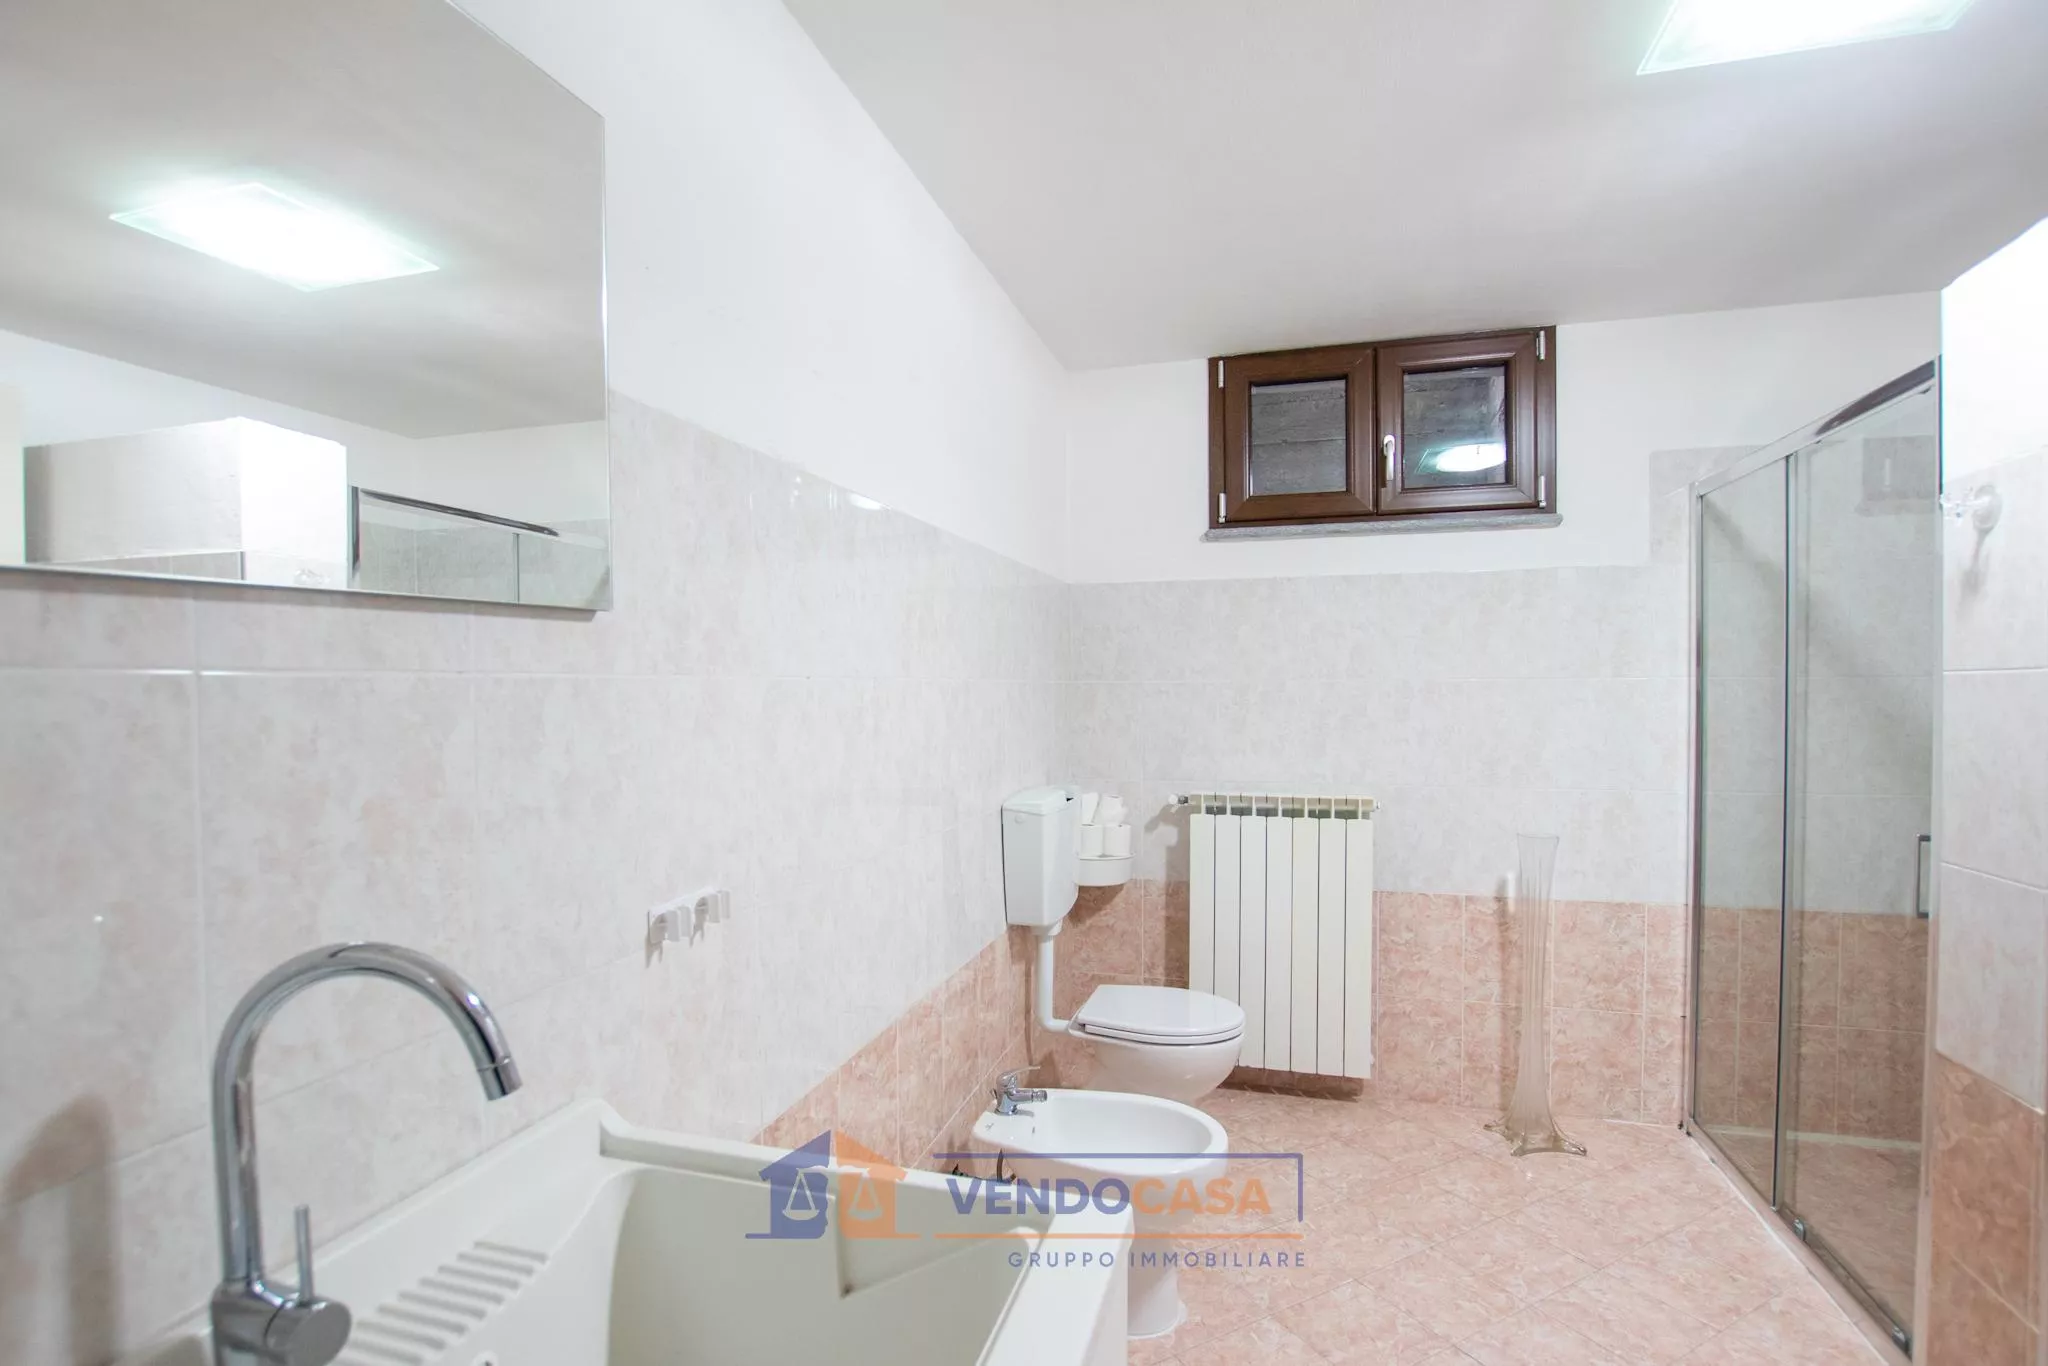 Immagine per Casa Indipendente in vendita a Asti corso Stazione Di Portacomaro 52